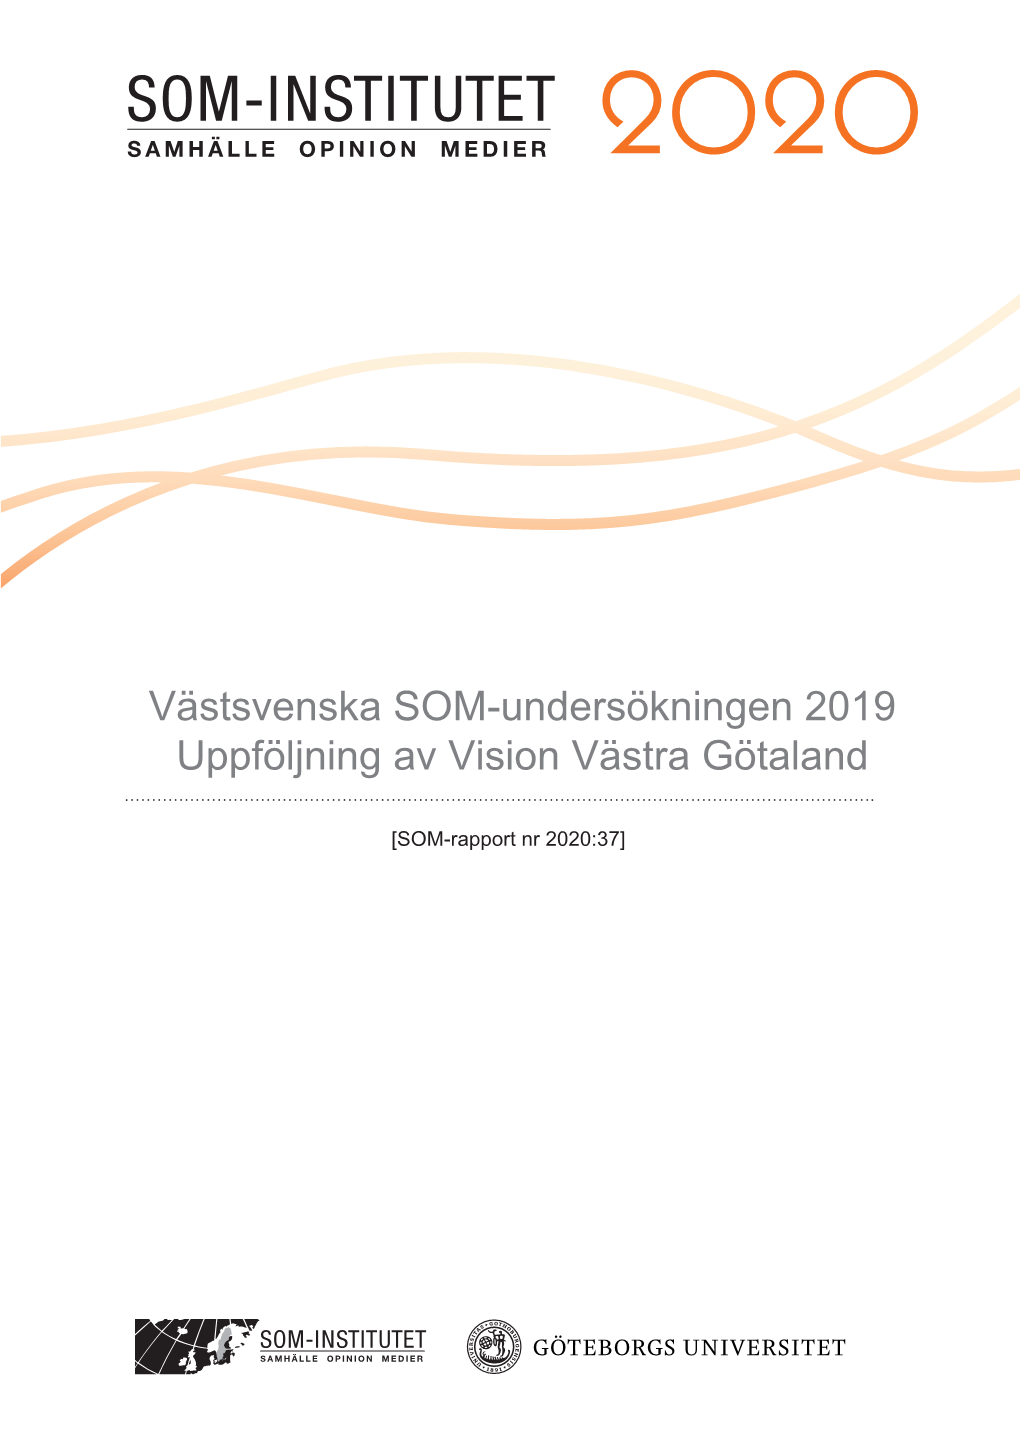 Västsvenska SOM-Undersökningen 2019 Uppföljning Av Vision Västra Götaland